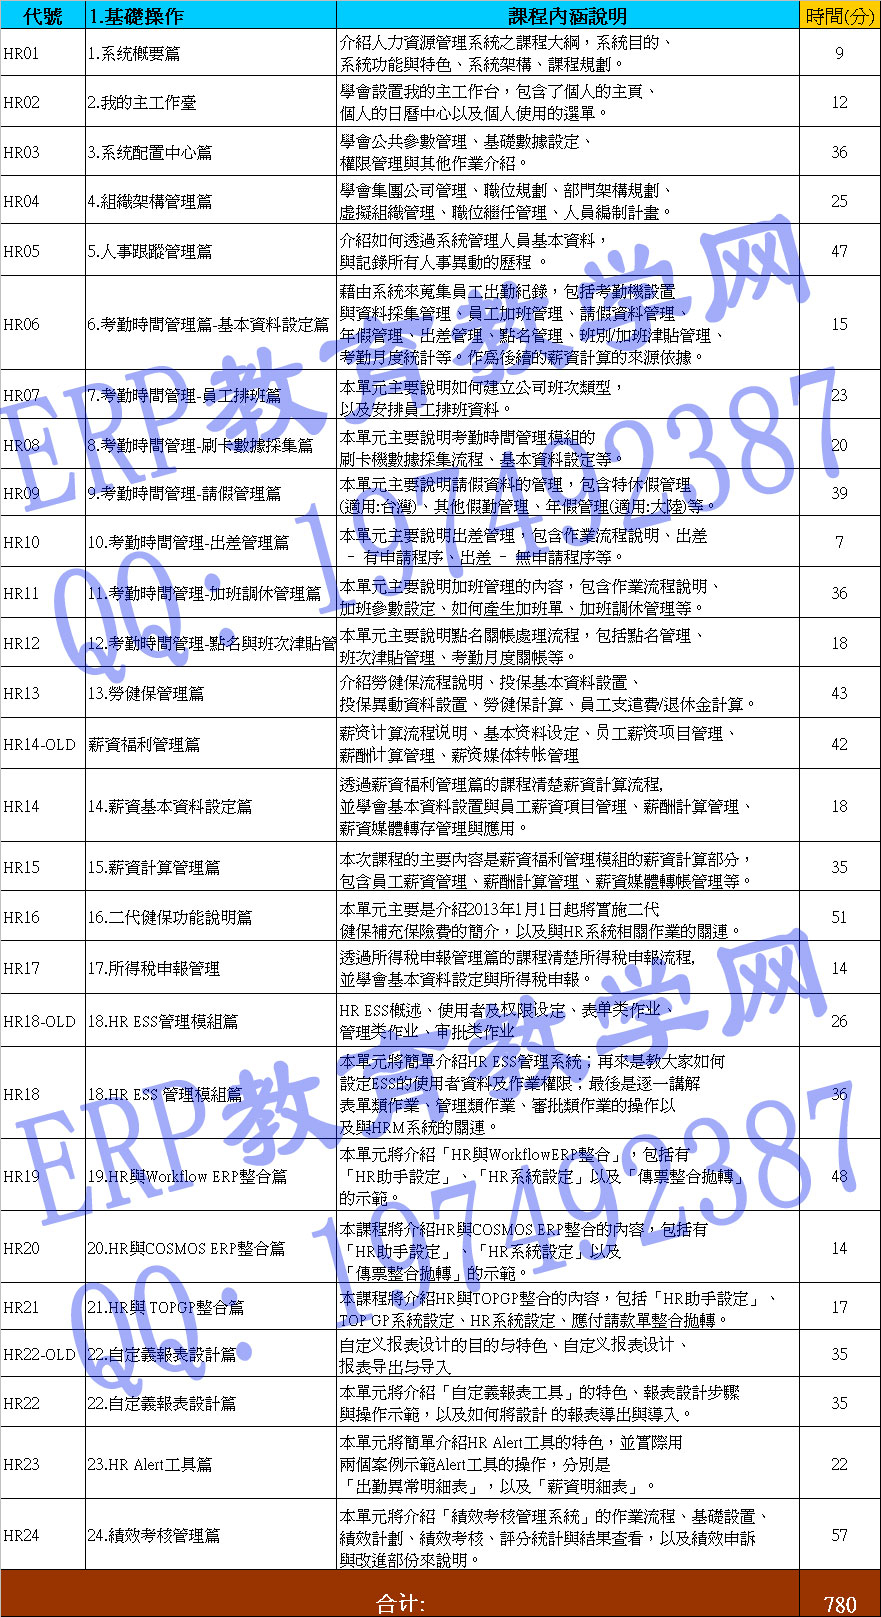 最新台湾鼎新/鼎捷HR5.0视频教程合集19大模块模块最全